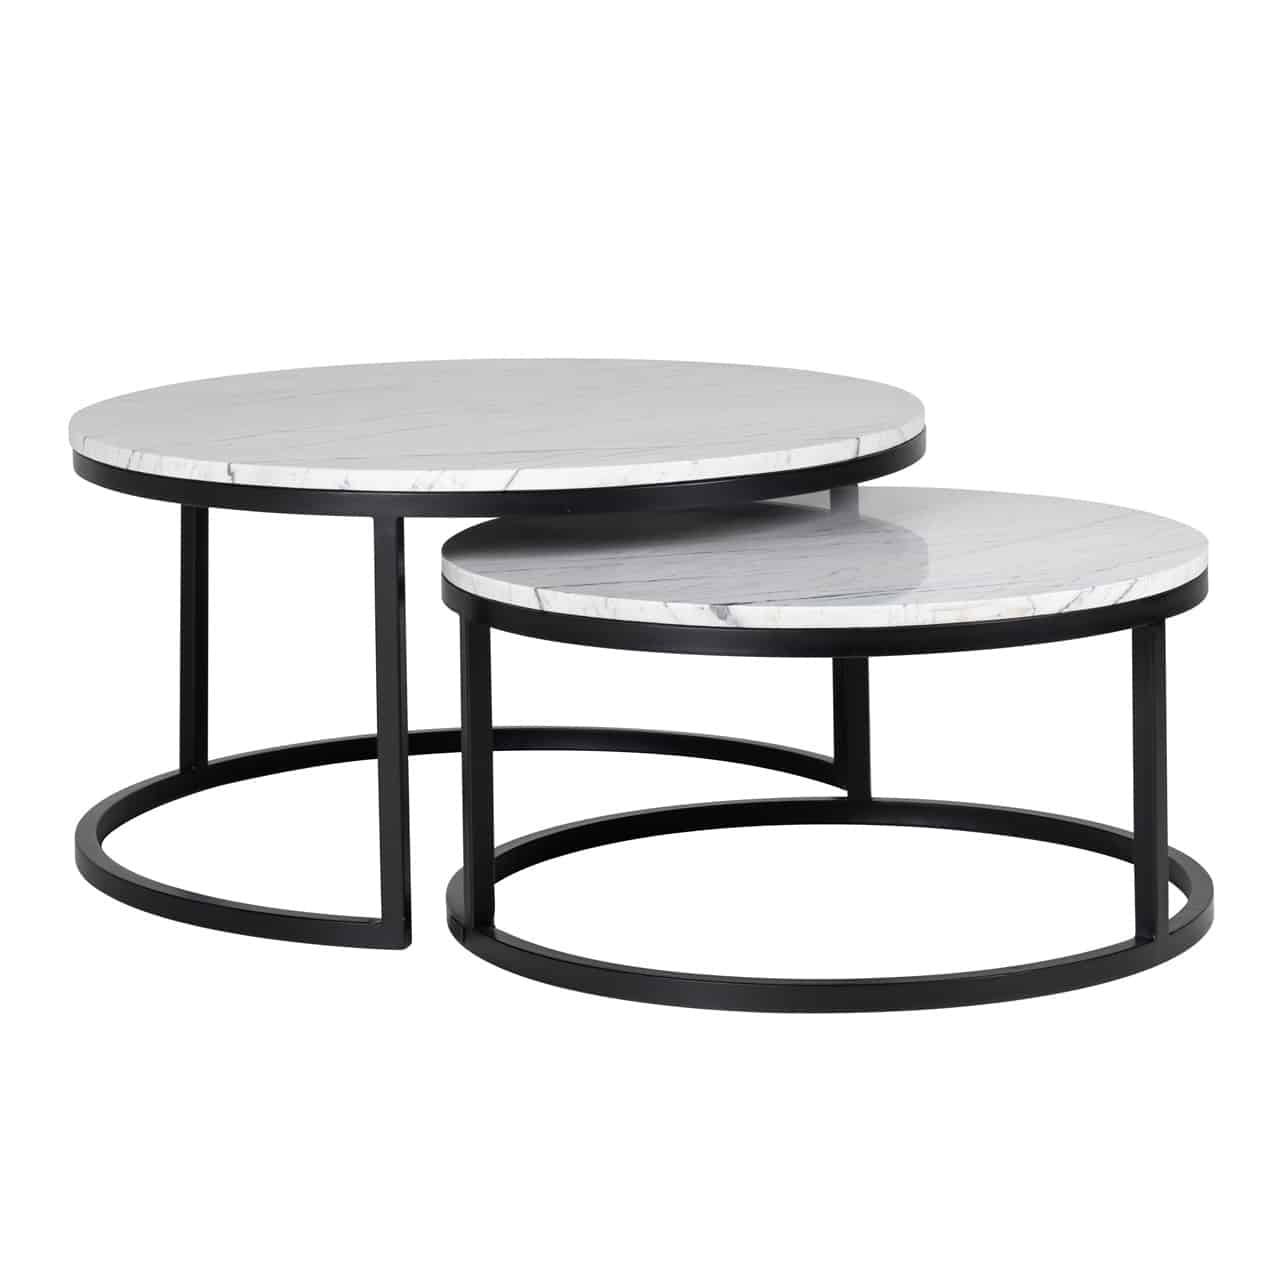 Couchtisch Set; zwei runde, schwarze Metallgestelle mit aufgelegter weißer Marmorplatte, ein Gestell einseitig unten offen, beide Tische sind zur Hälfte ineinandergeschoben.